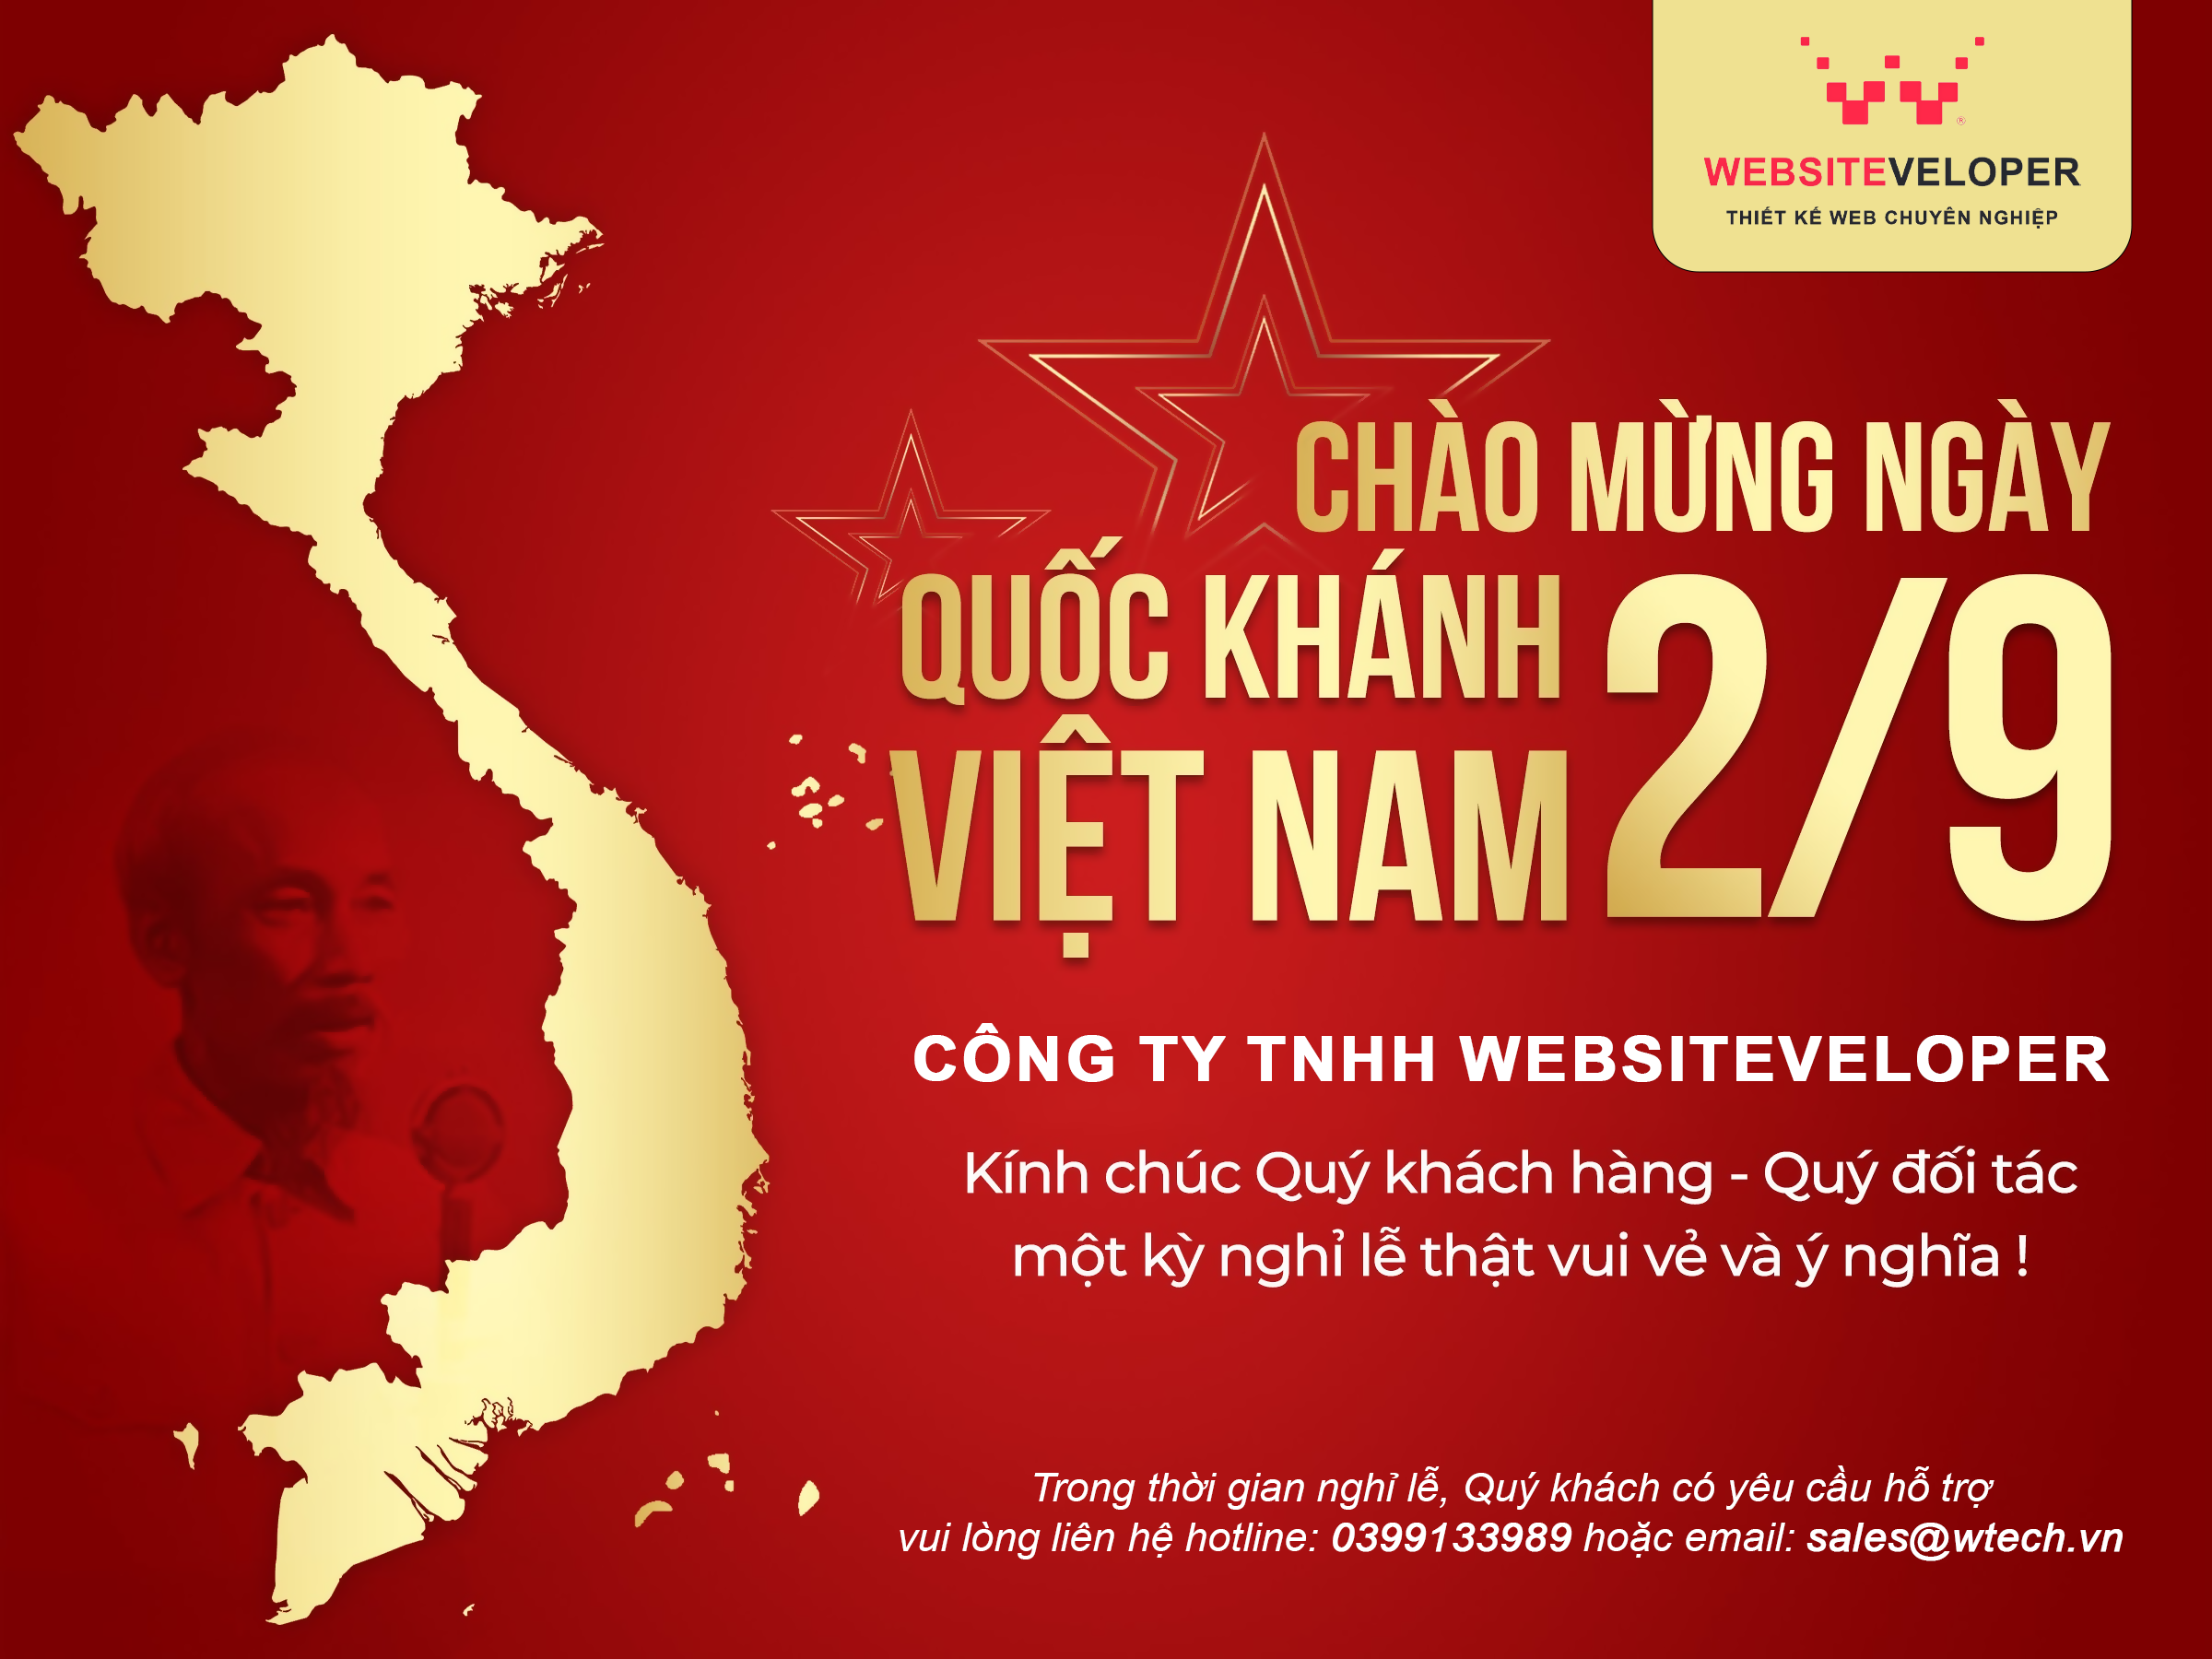 Websiteveloper Thông Báo Lịch Nghỉ Lễ Quốc Khánh 2/9